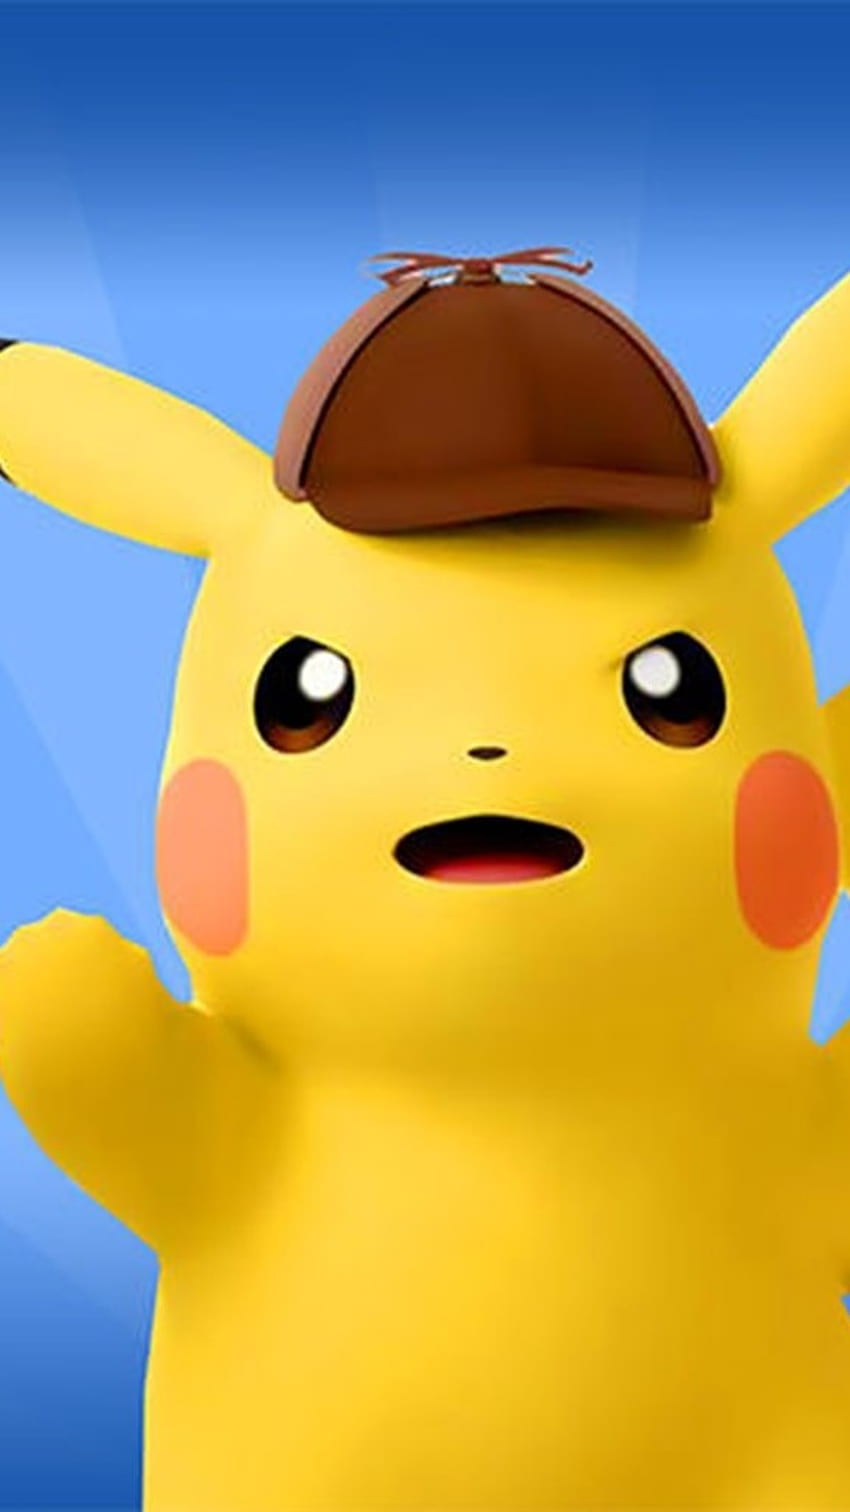 Pikachu best pokemon HD wallpapers | Pxfuel